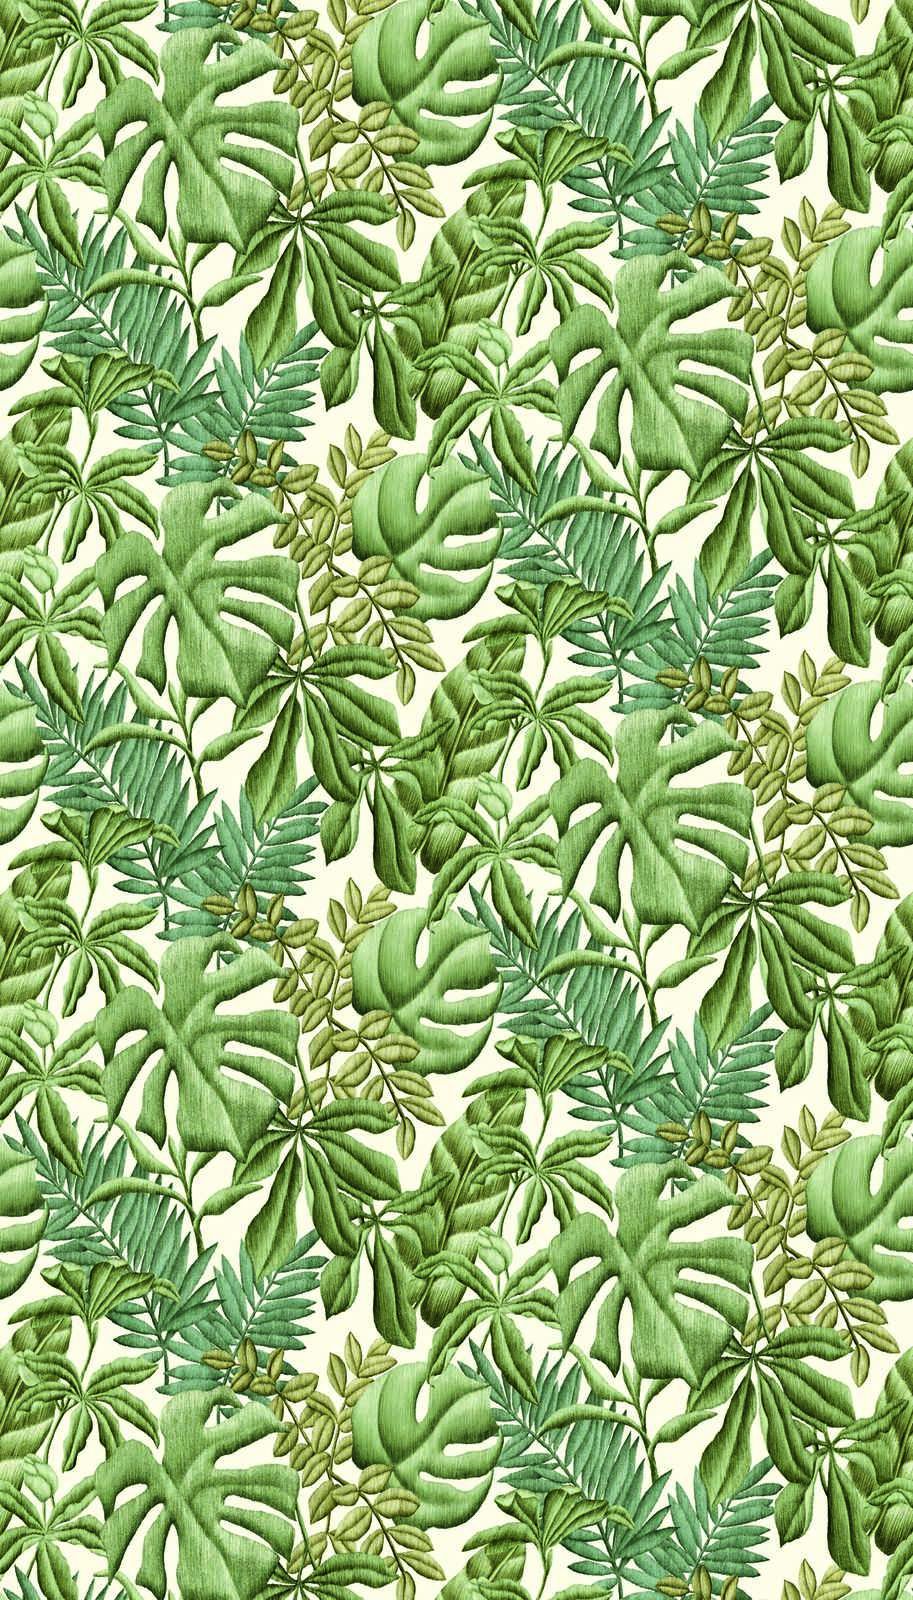             Papel pintado no tejido con varias hojas - verde, crema
        